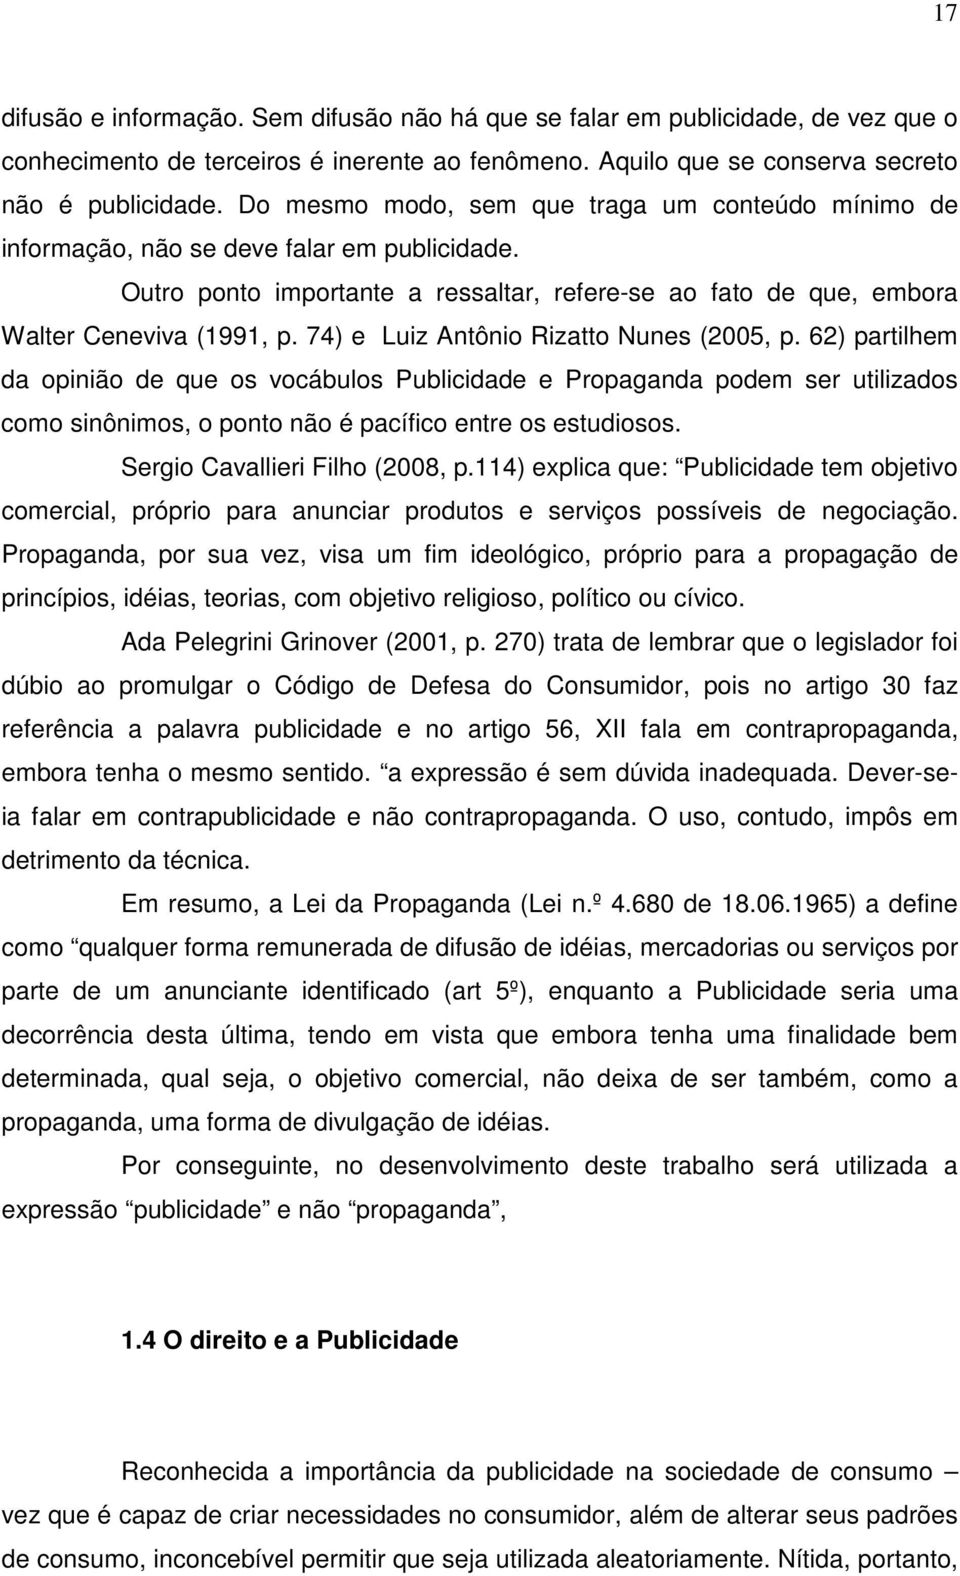 74) e Luiz Antônio Rizatto Nunes (2005, p. 62) partilhem da opinião de que os vocábulos Publicidade e Propaganda podem ser utilizados como sinônimos, o ponto não é pacífico entre os estudiosos.